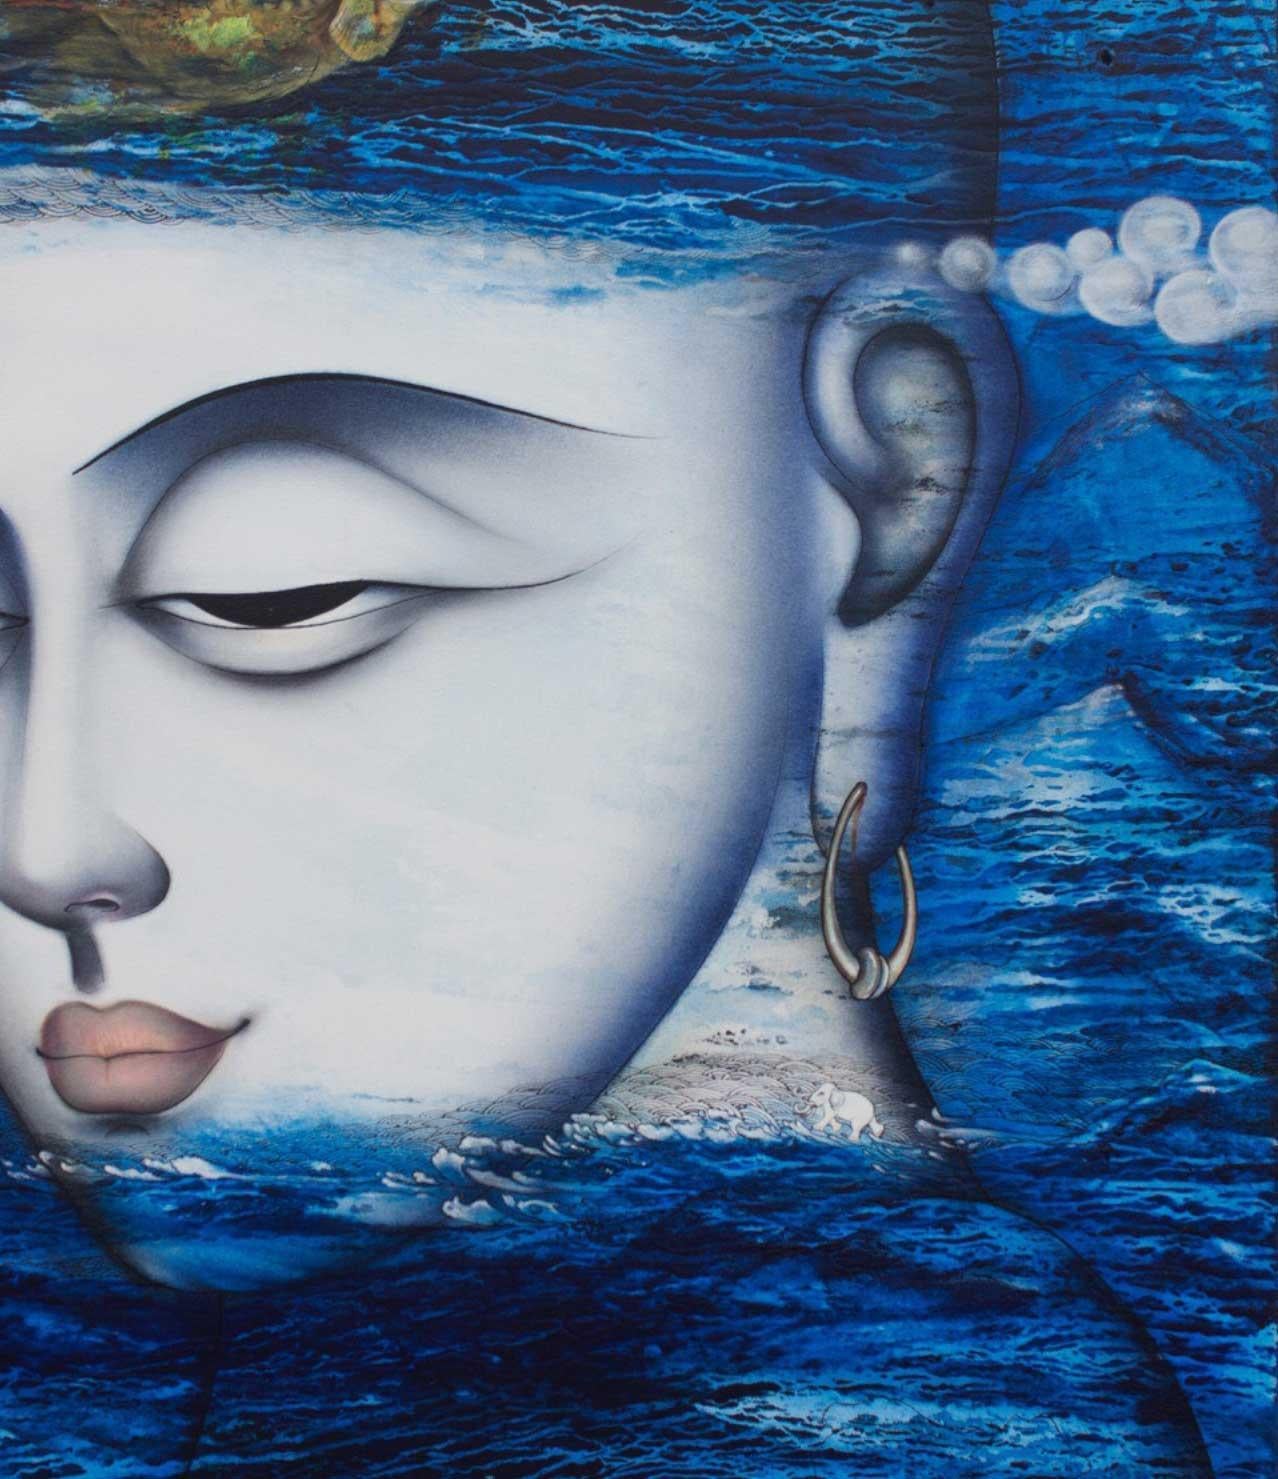 Apaam nidhi, peinture technique mixte, bleue, blanche, verte de l'artiste indien « en stock » - Contemporain Mixed Media Art par Dharmendra Rathore